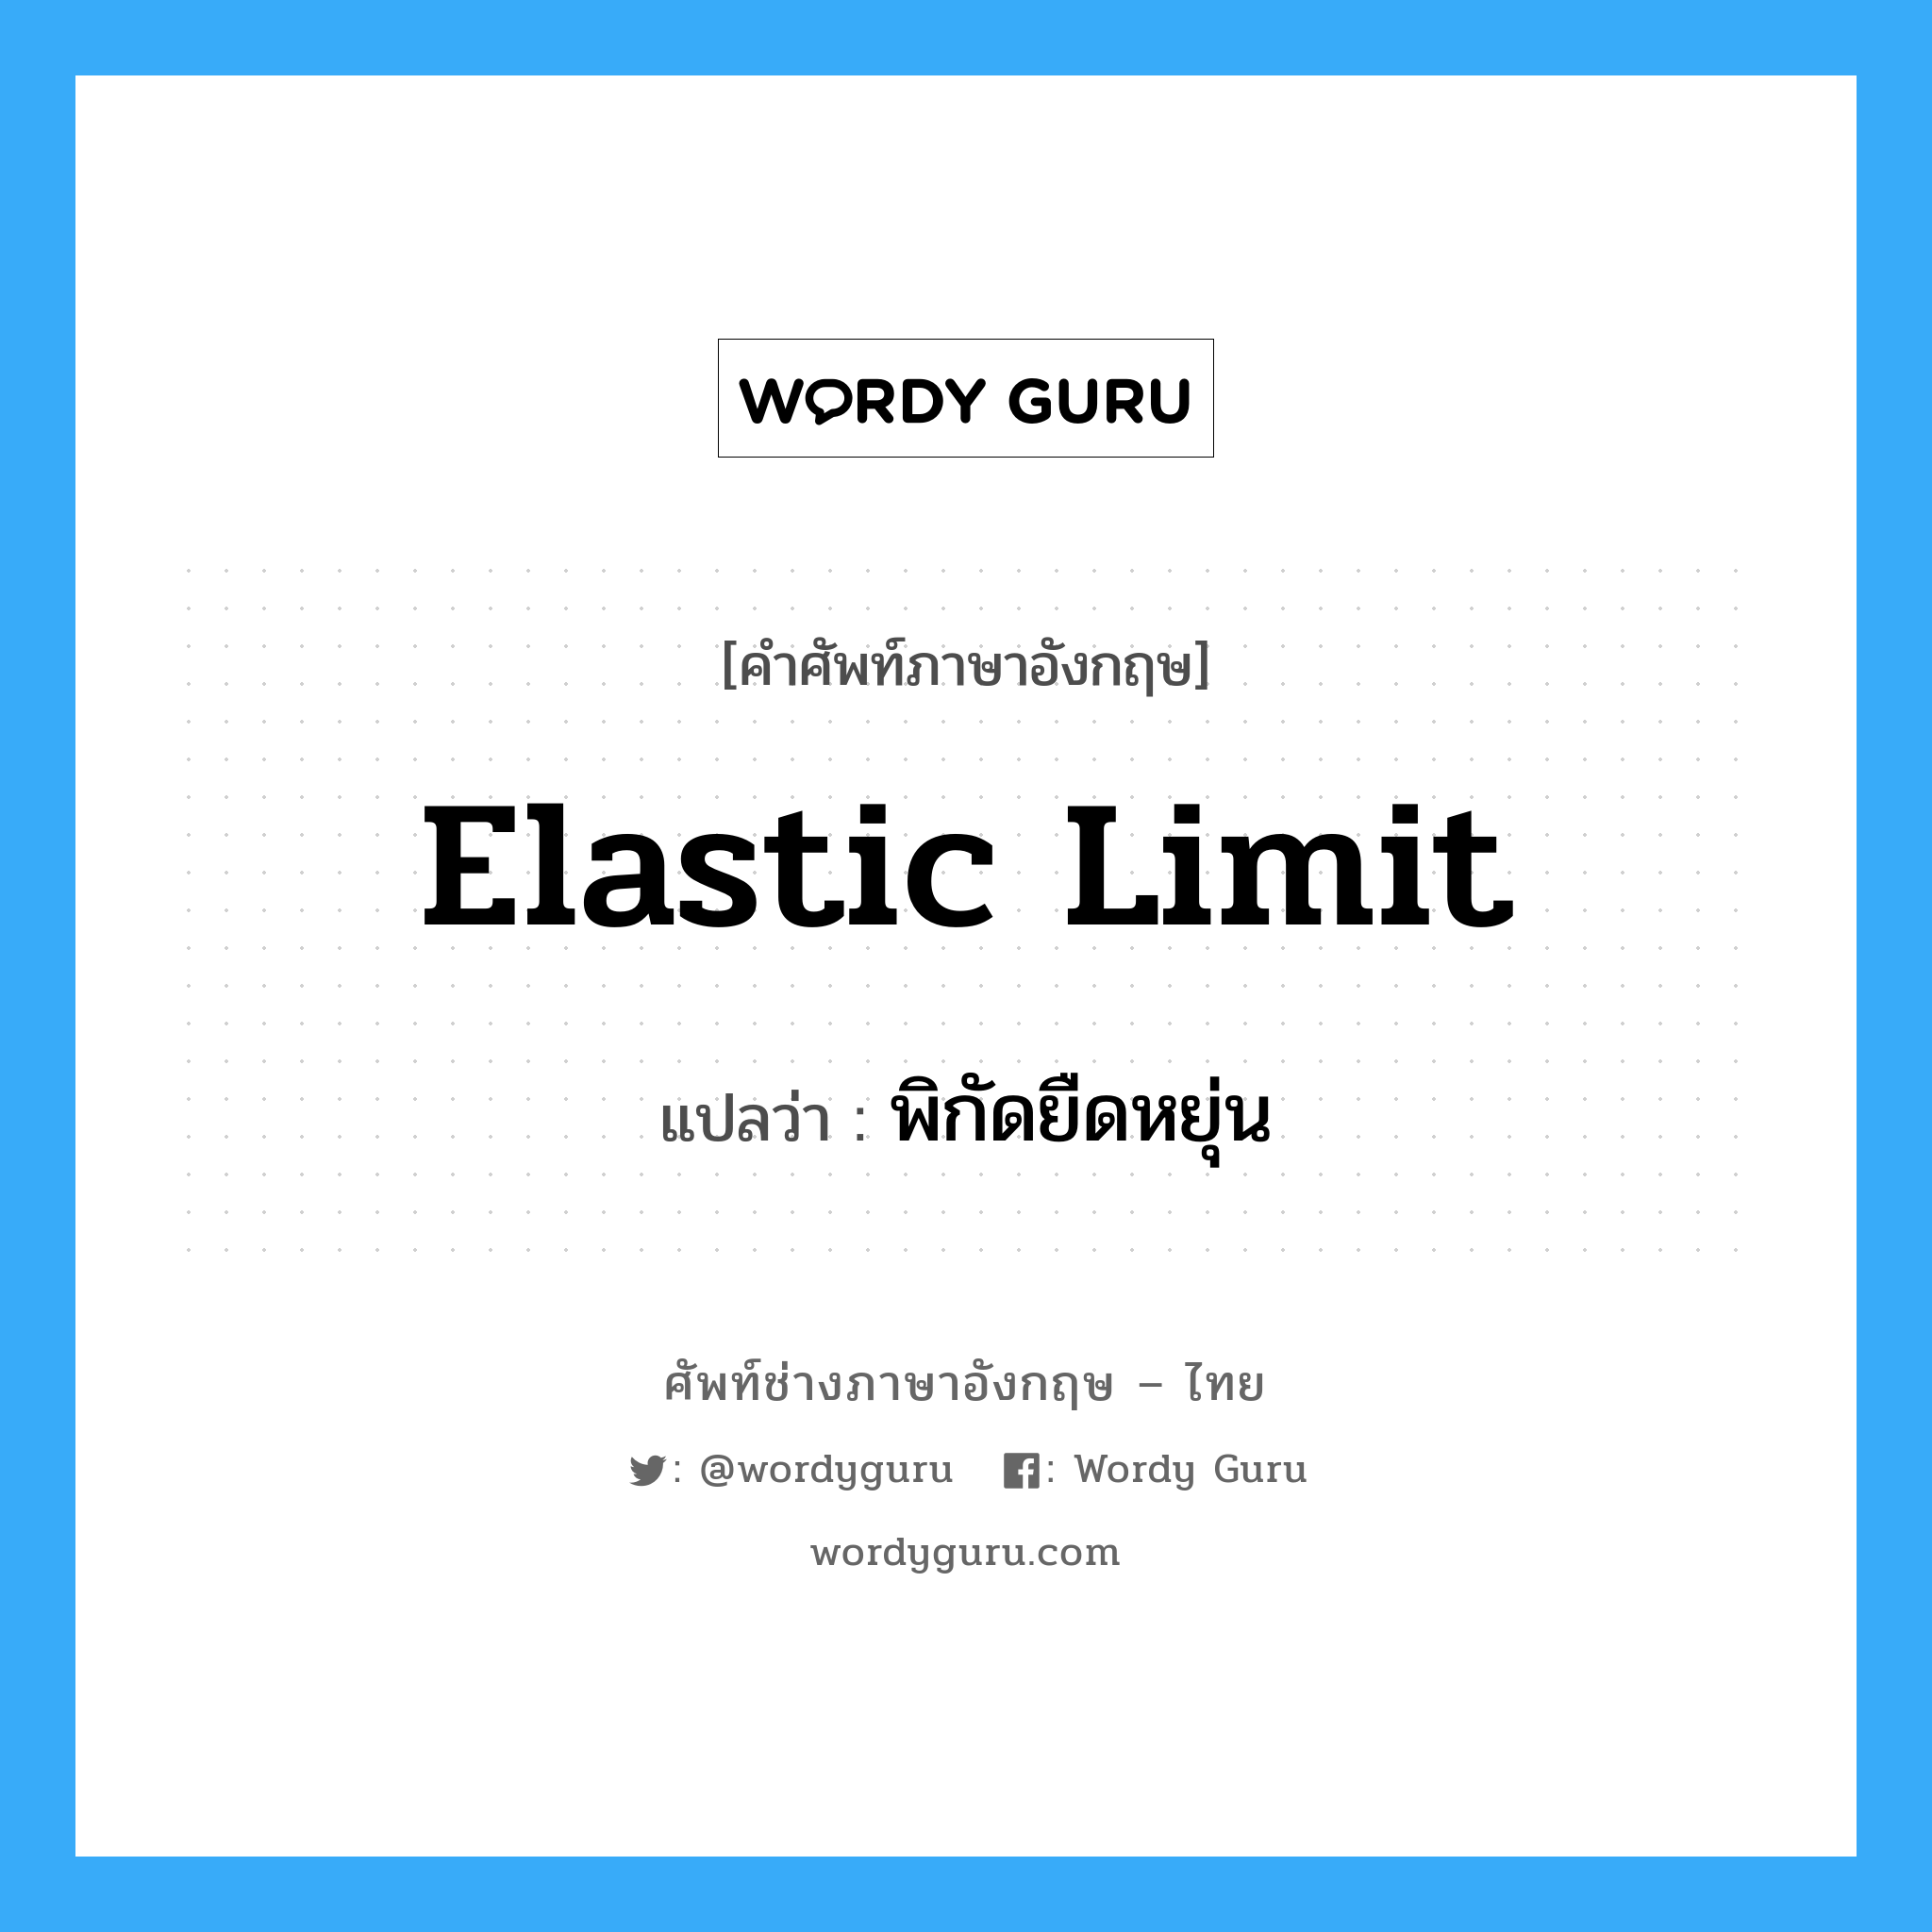 Elastic limit: แปลว่า?, คำศัพท์ช่างภาษาอังกฤษ - ไทย elastic limit คำศัพท์ภาษาอังกฤษ elastic limit แปลว่า พิกัดยืดหยุ่น